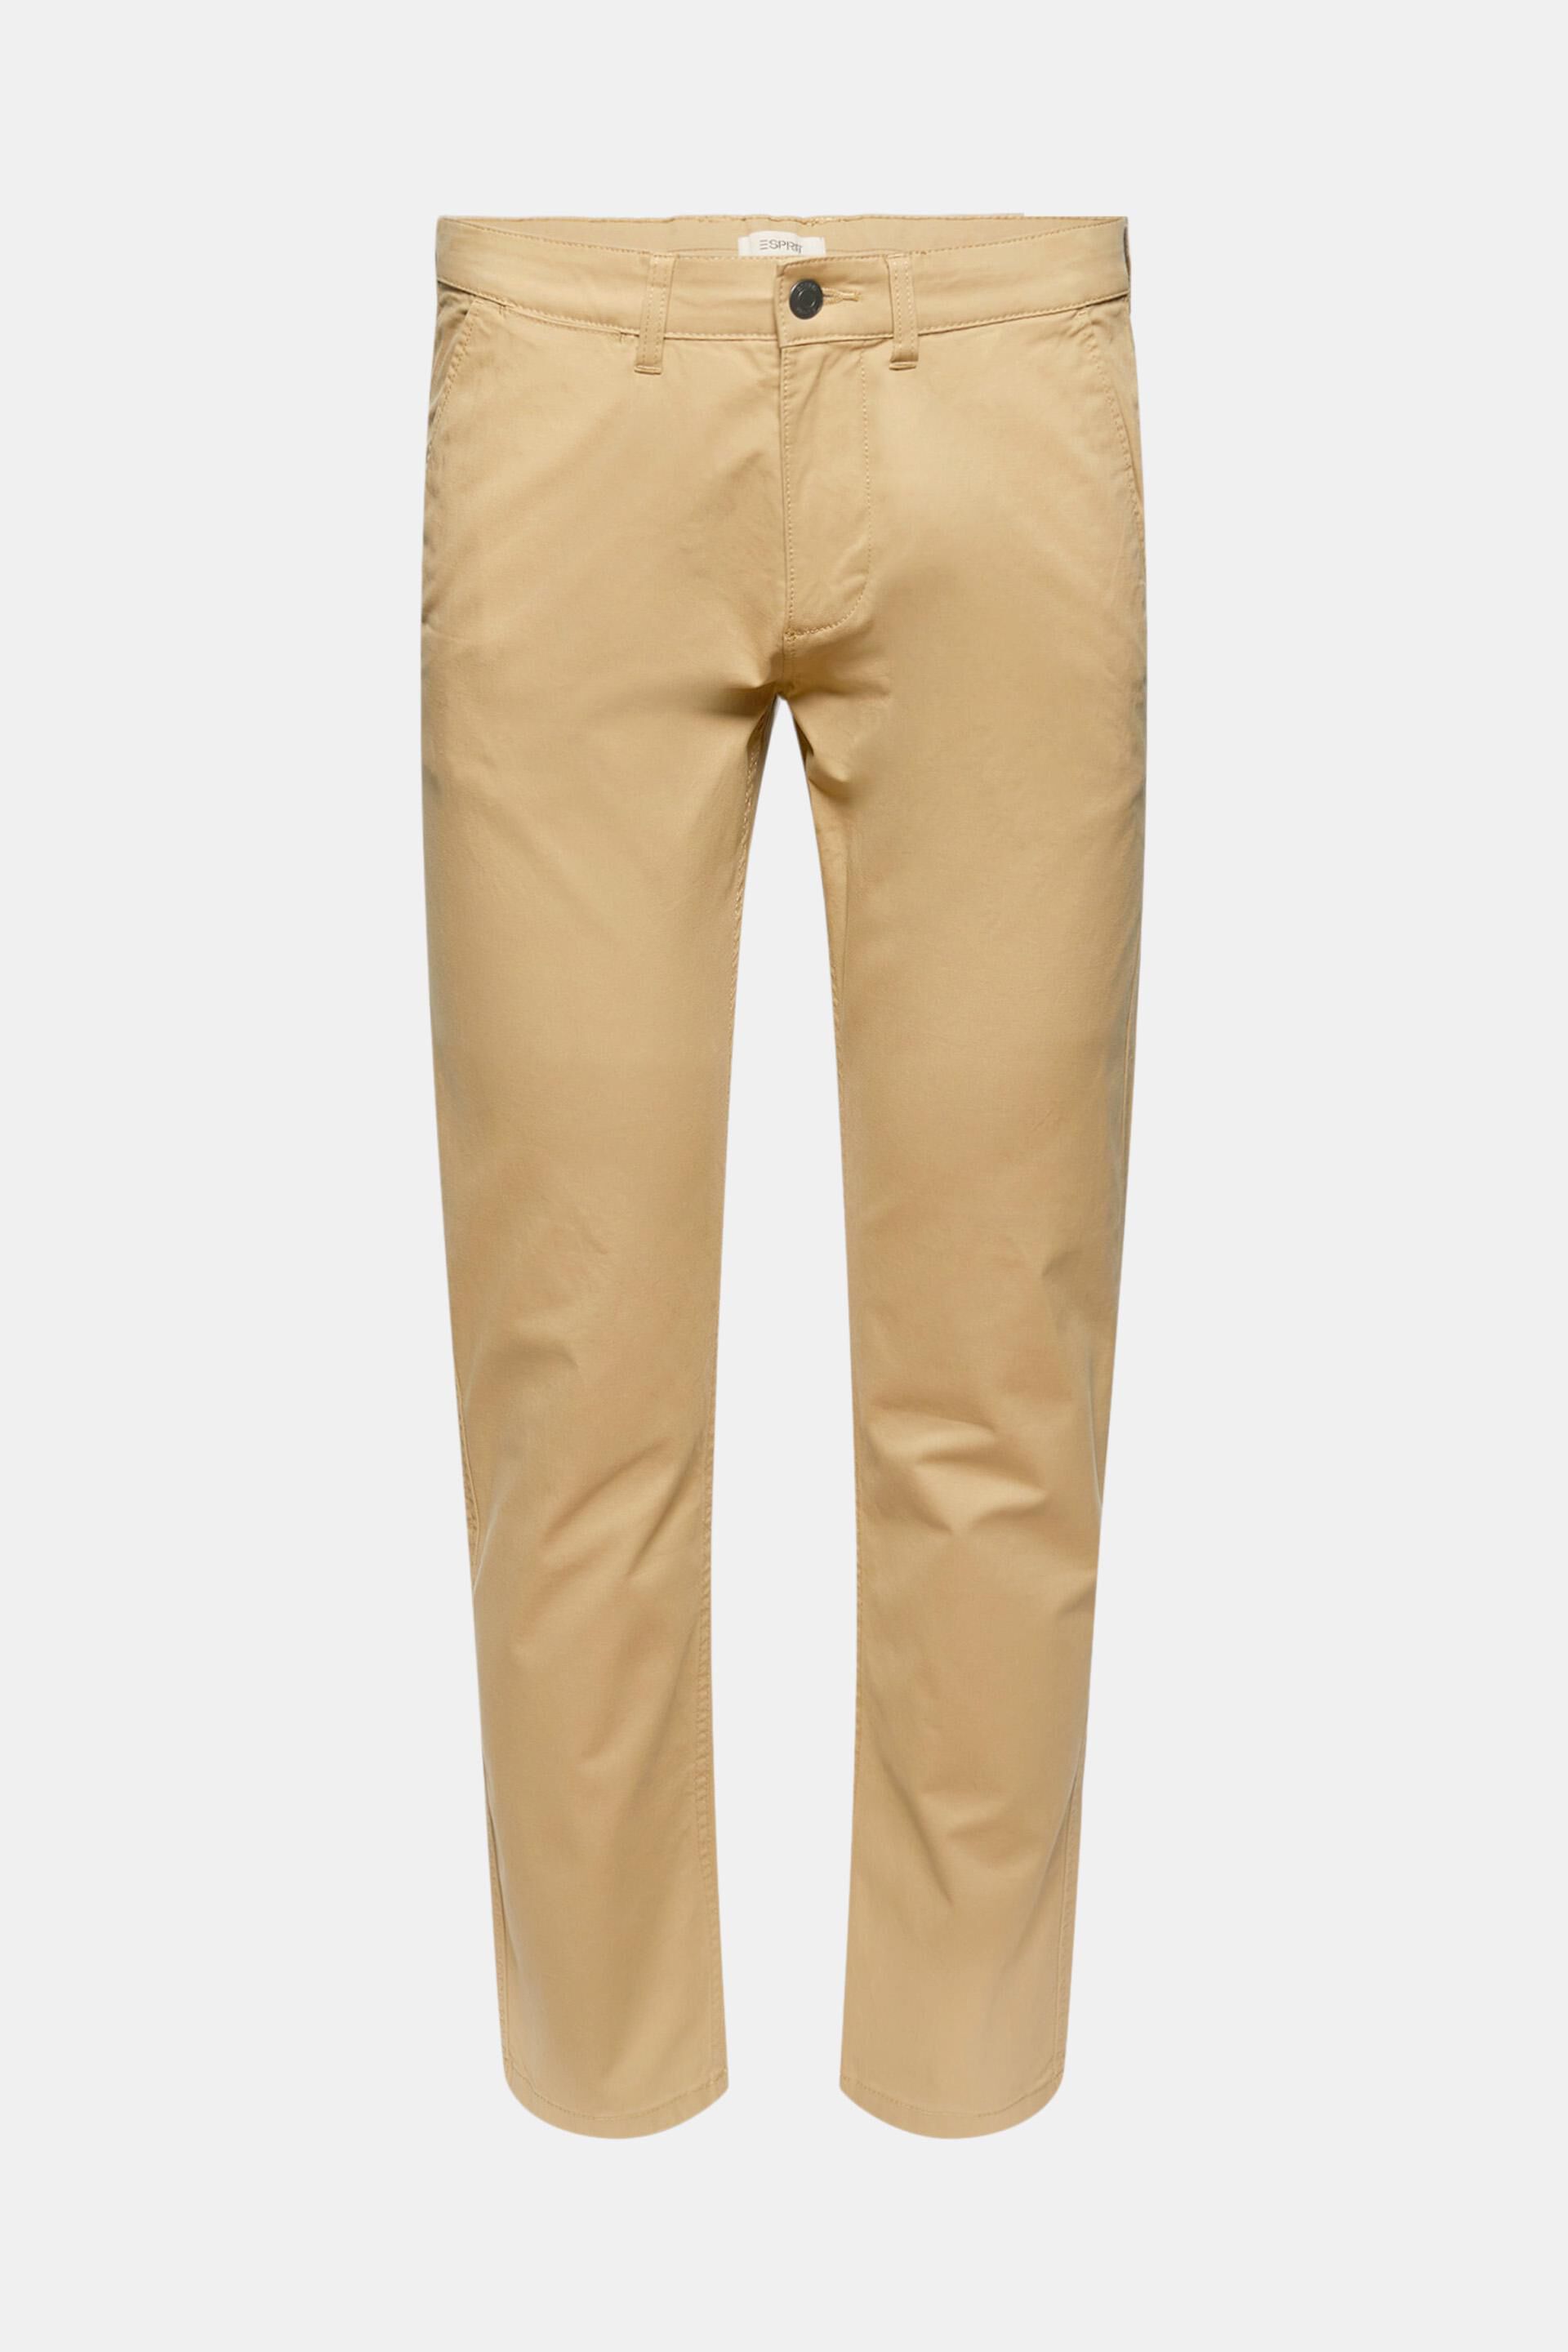 Moda Spodnie Spodnie materiałowe Esprit Spodnie materia\u0142owe br\u0105zowy W stylu casual 